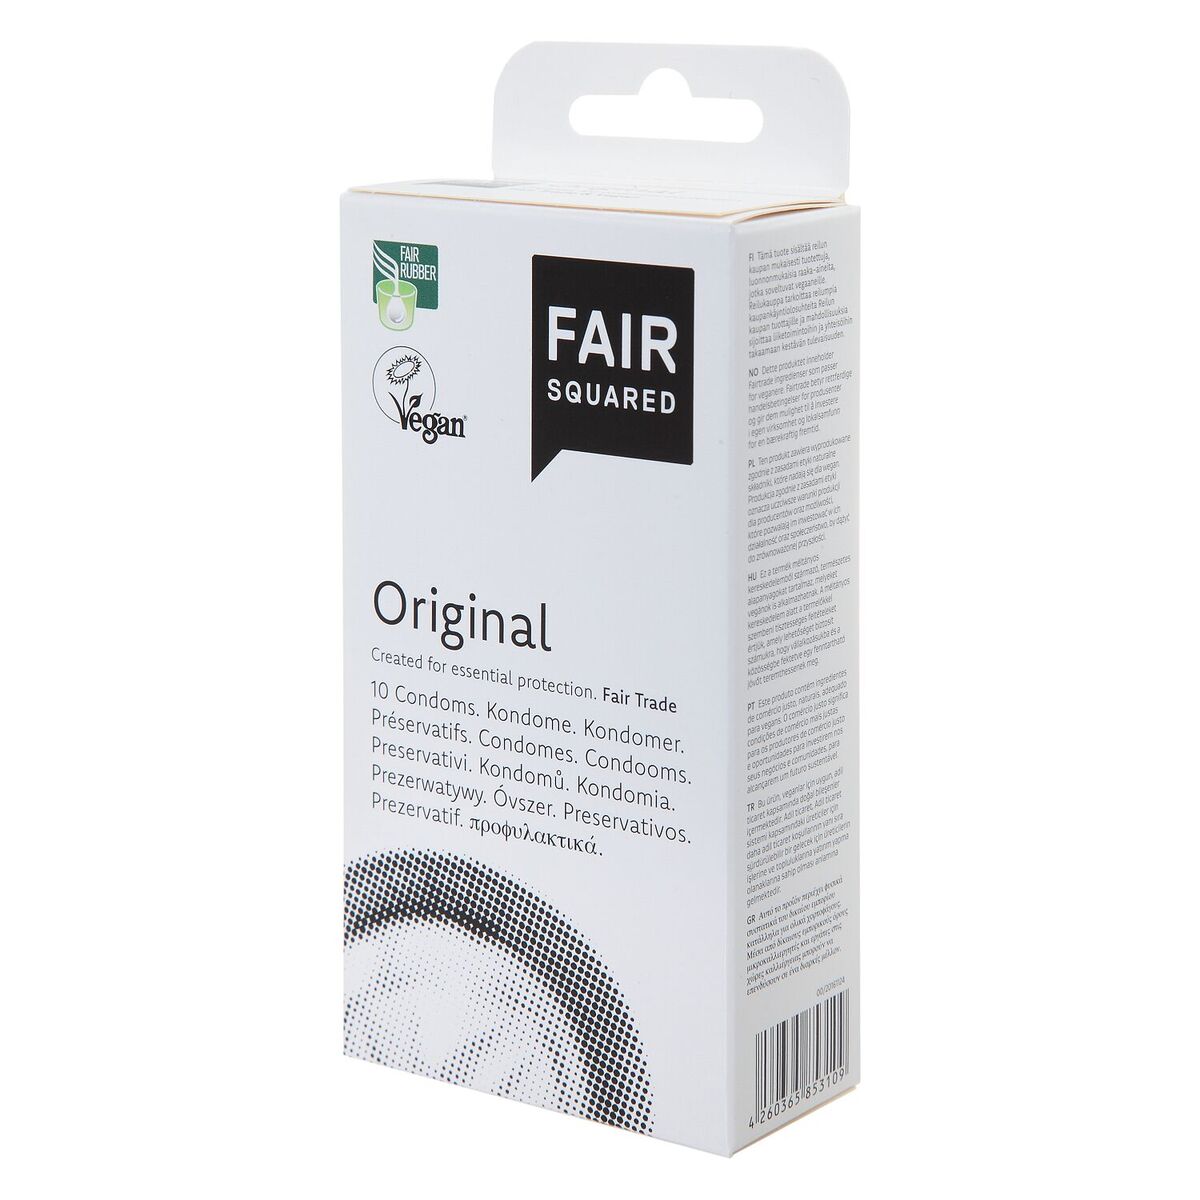 FAIR SQUARED - Original kondom